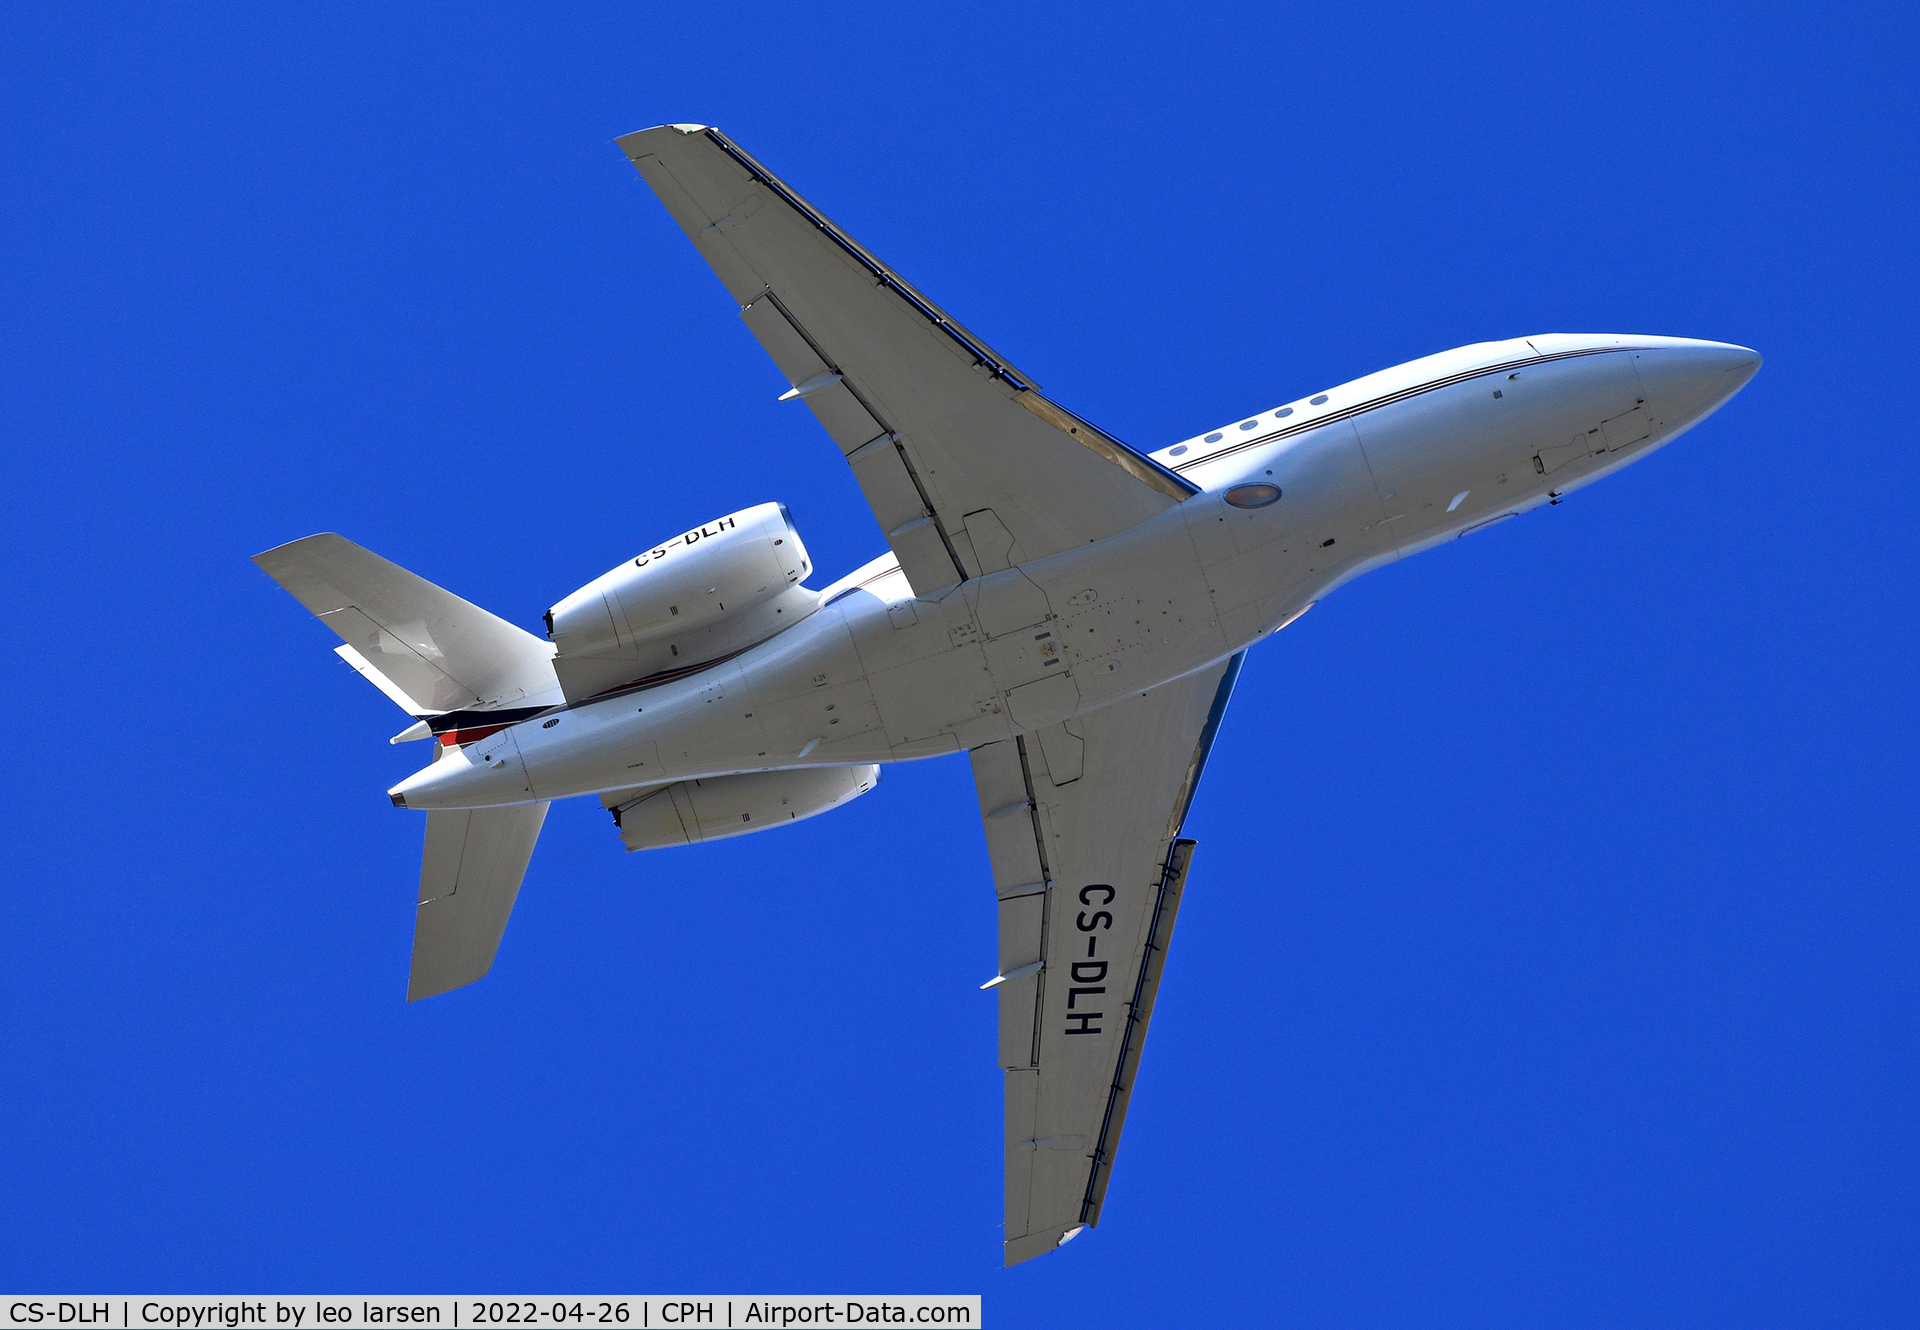 CS-DLH, 2007 Dassault Falcon 2000EX C/N 149, Copenhagen 26.4.2022